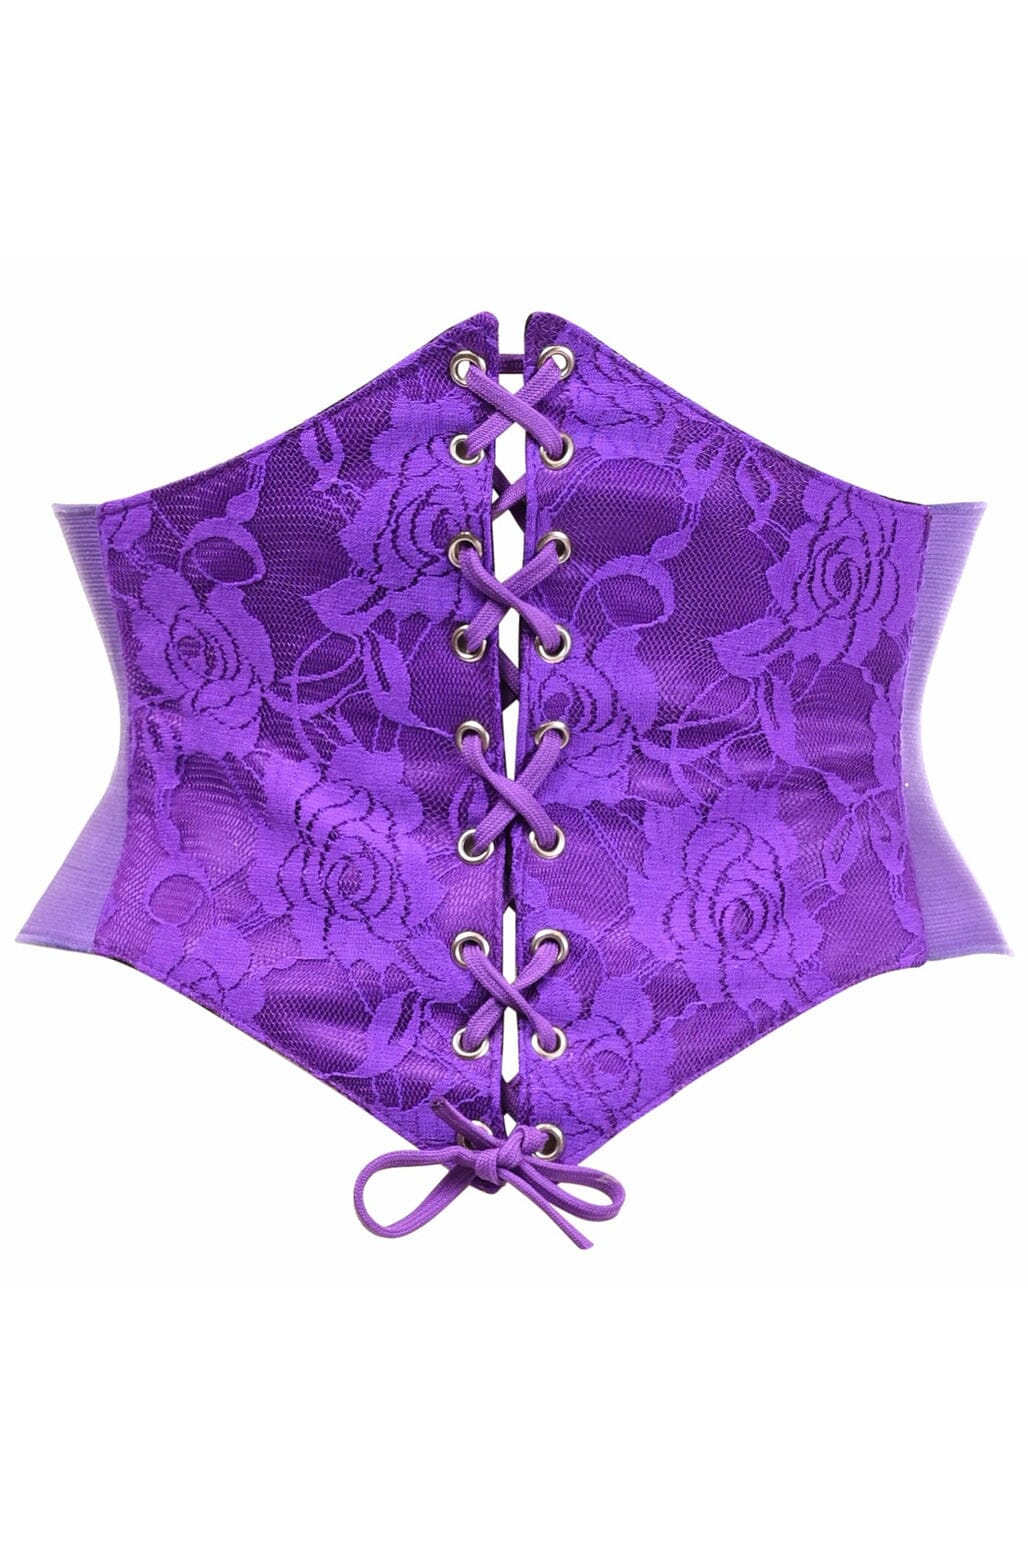 Lavish Purple Lace Corset Belt Cincher-Corset Belts-Daisy Corsets-Purple-S-SEXYSHOES.COM